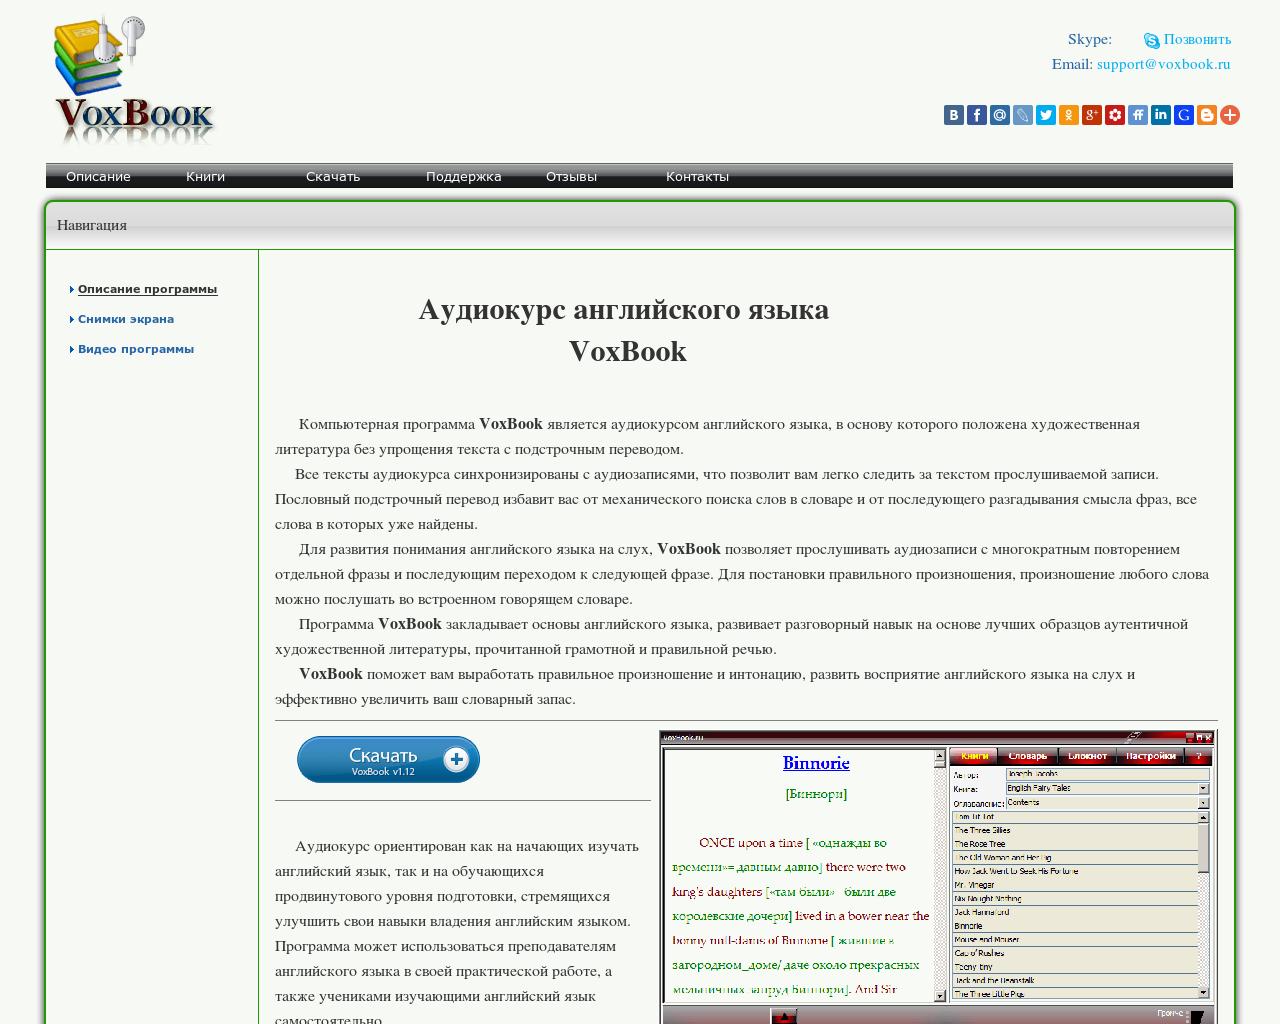 Изображение сайта voxbook.ru в разрешении 1280x1024